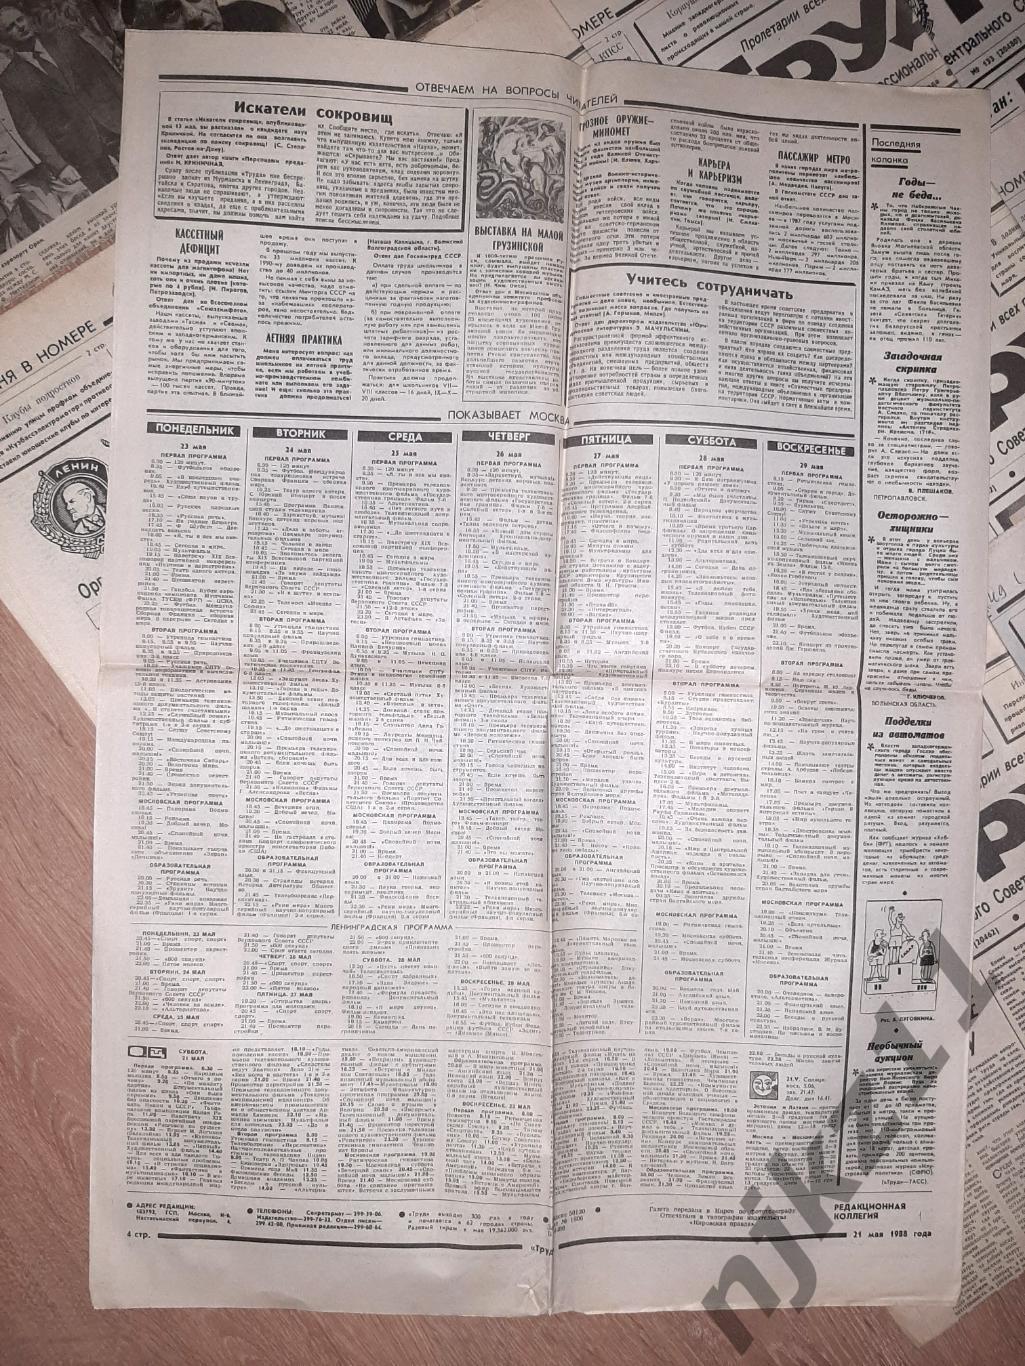 22 газеты Труд за 1988-89г. Есть ЧЕ 1988г по футболу, есть спорт 3